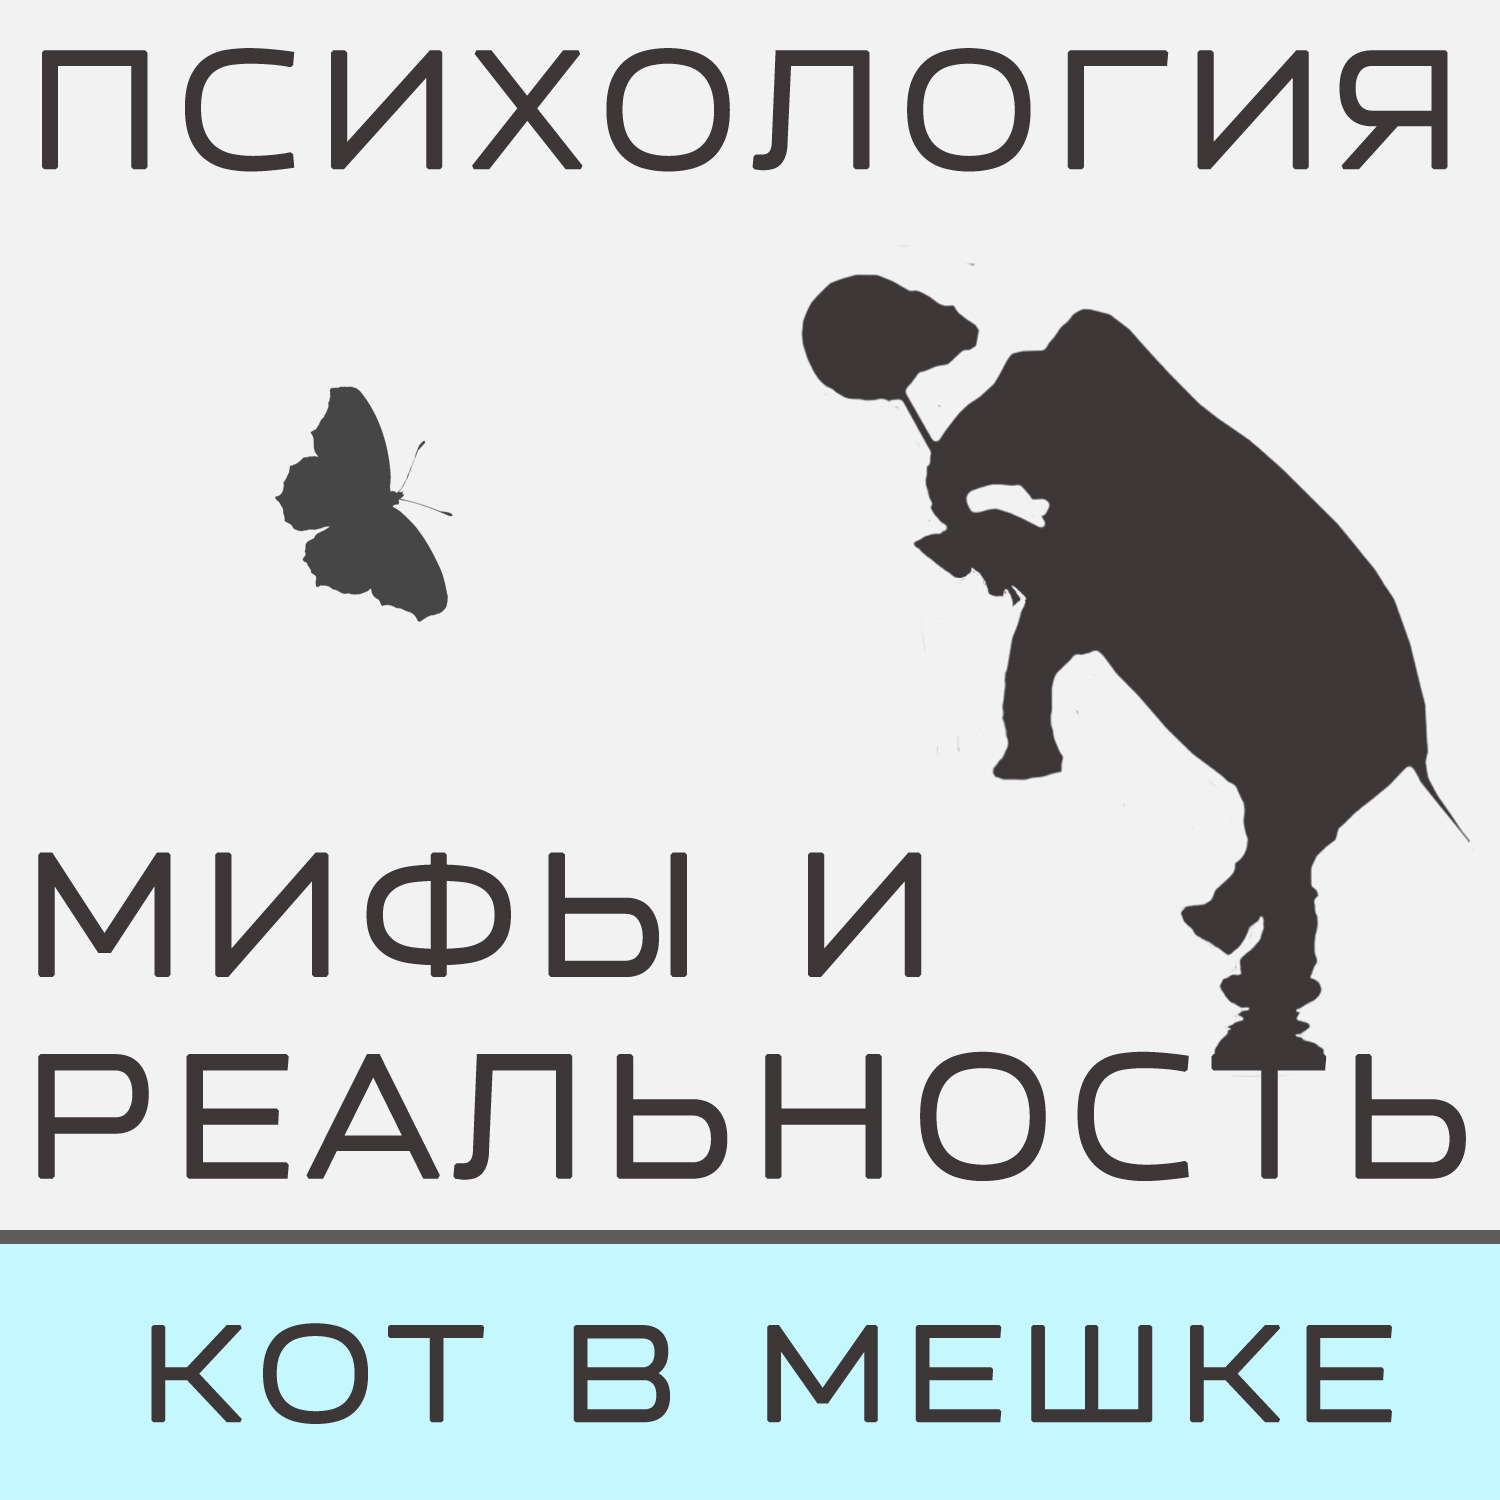 Александра Копецкая (Иванова) Кот в мешке (октябрь)